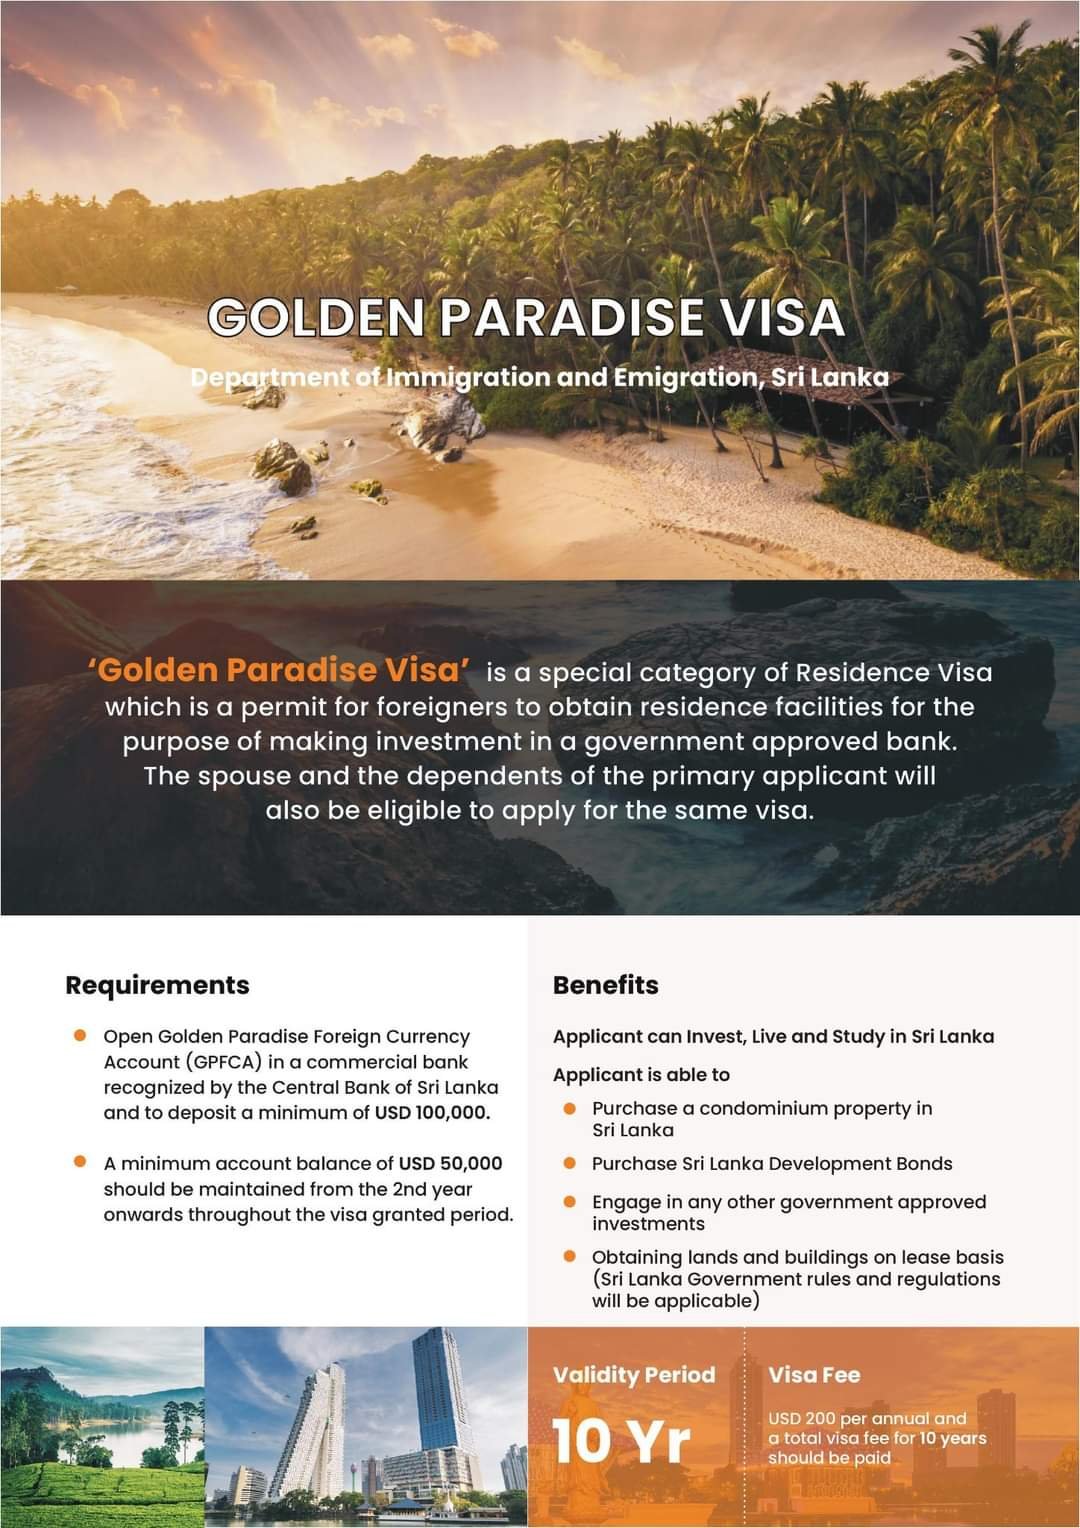 Golden Paradise Residence Visa Program - Invest, Live and Study in<br />
Sri Lanka 